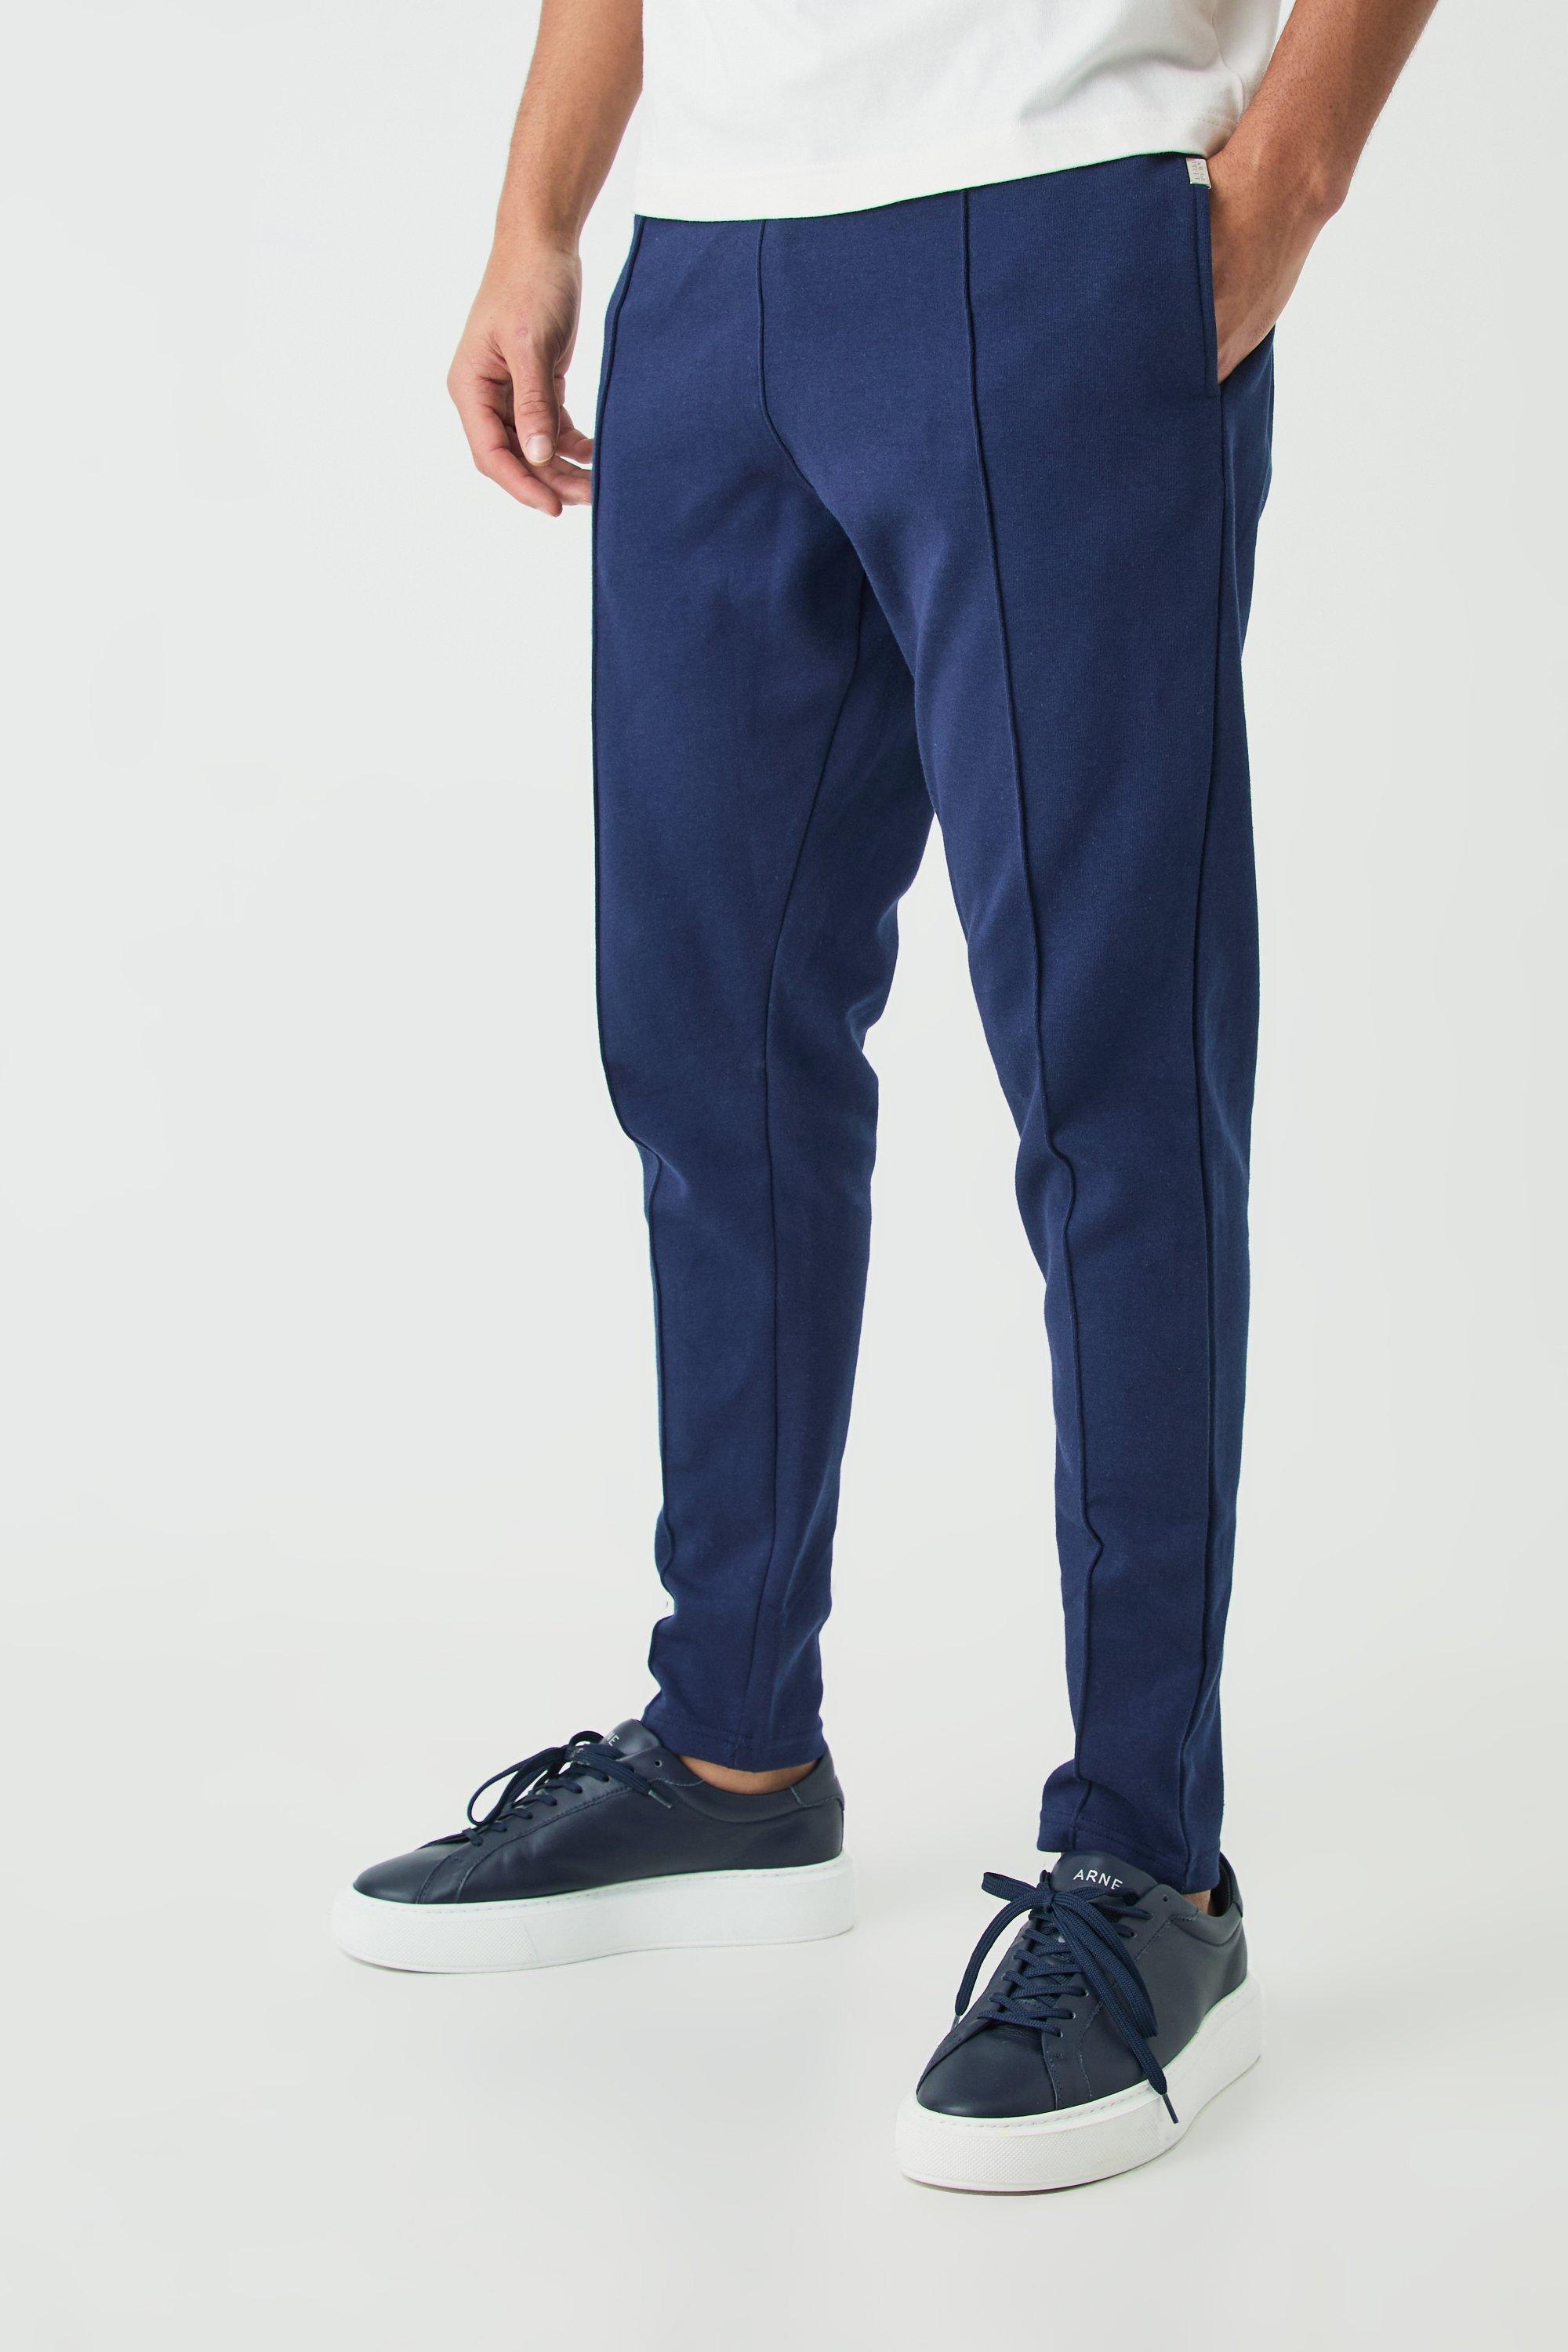 Image of Pantaloni tuta affusolati Slim Fit con nervature e nervature, Navy